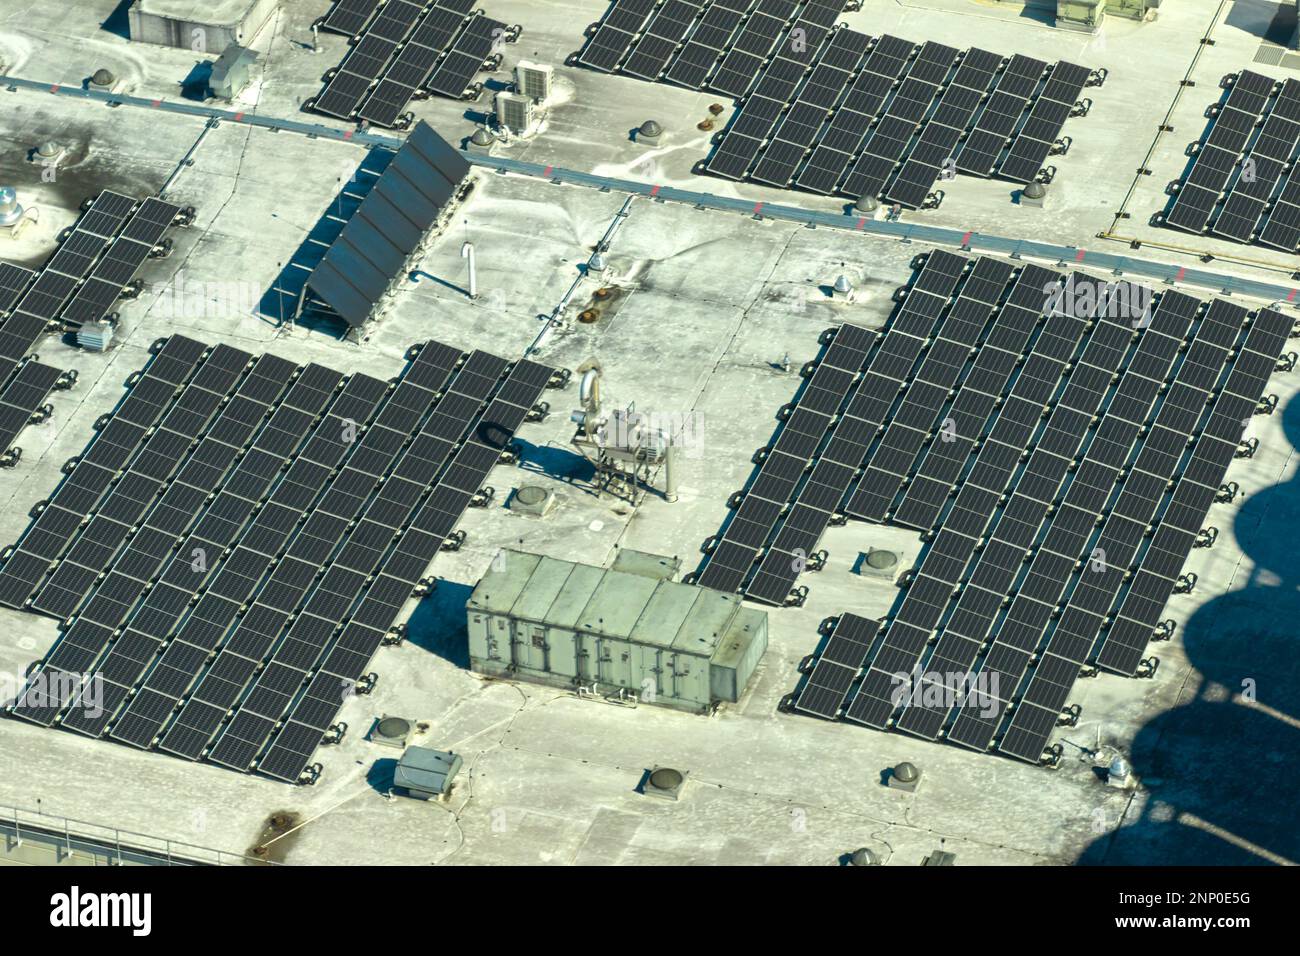 Luftaufnahme eines Solarkraftwerks mit blauen Photovoltaik-Paneelen, die auf dem Dach eines Industriegebäudes montiert sind, um ökologischen Ökostrom zu erzeugen. Produkt Stockfoto